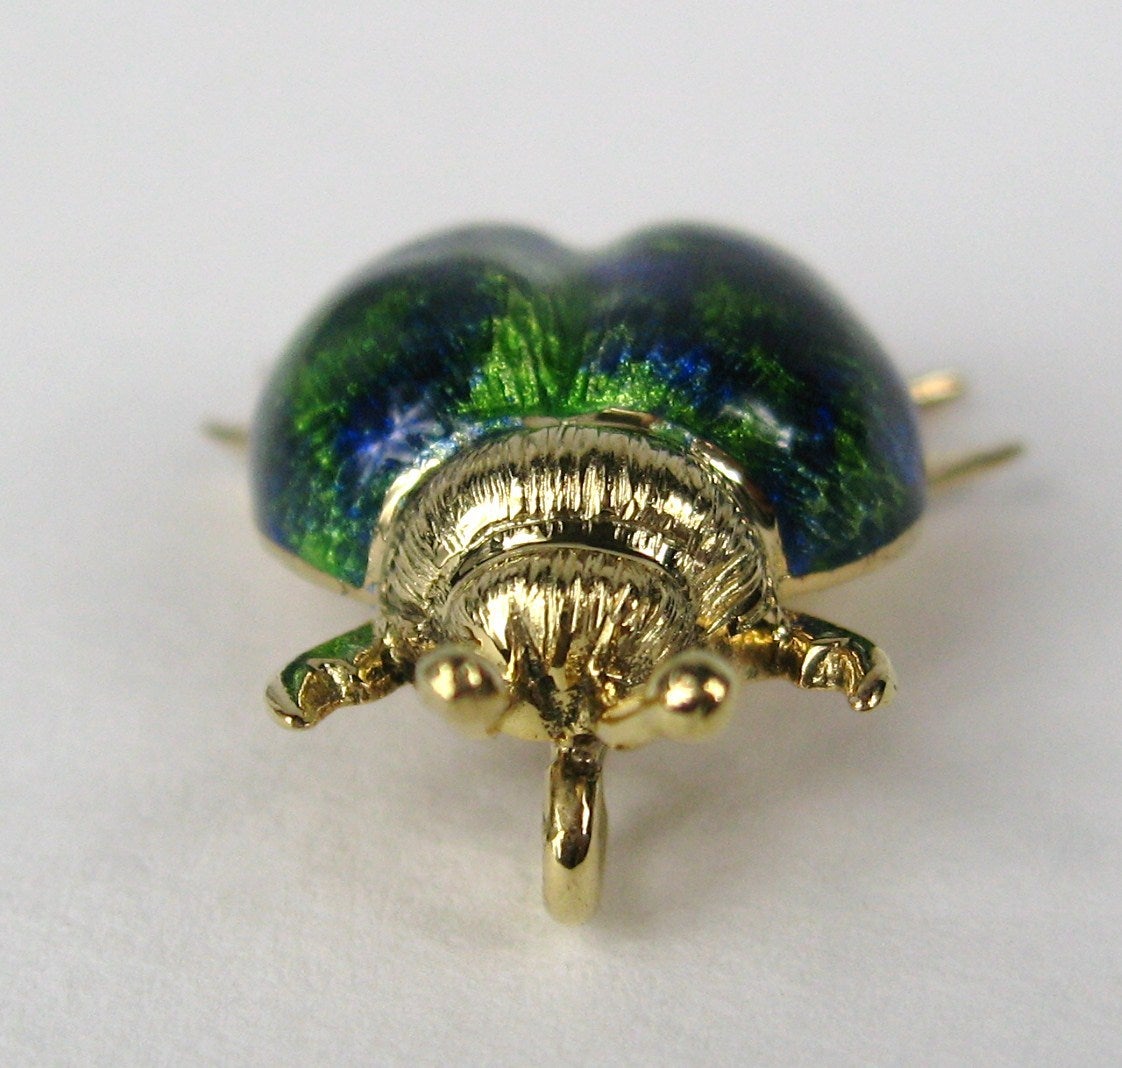 Merveilleux émaillage vert et bleu  sur ce pendentif en forme de scarabée. Composé d'or 14K. Mesure 1